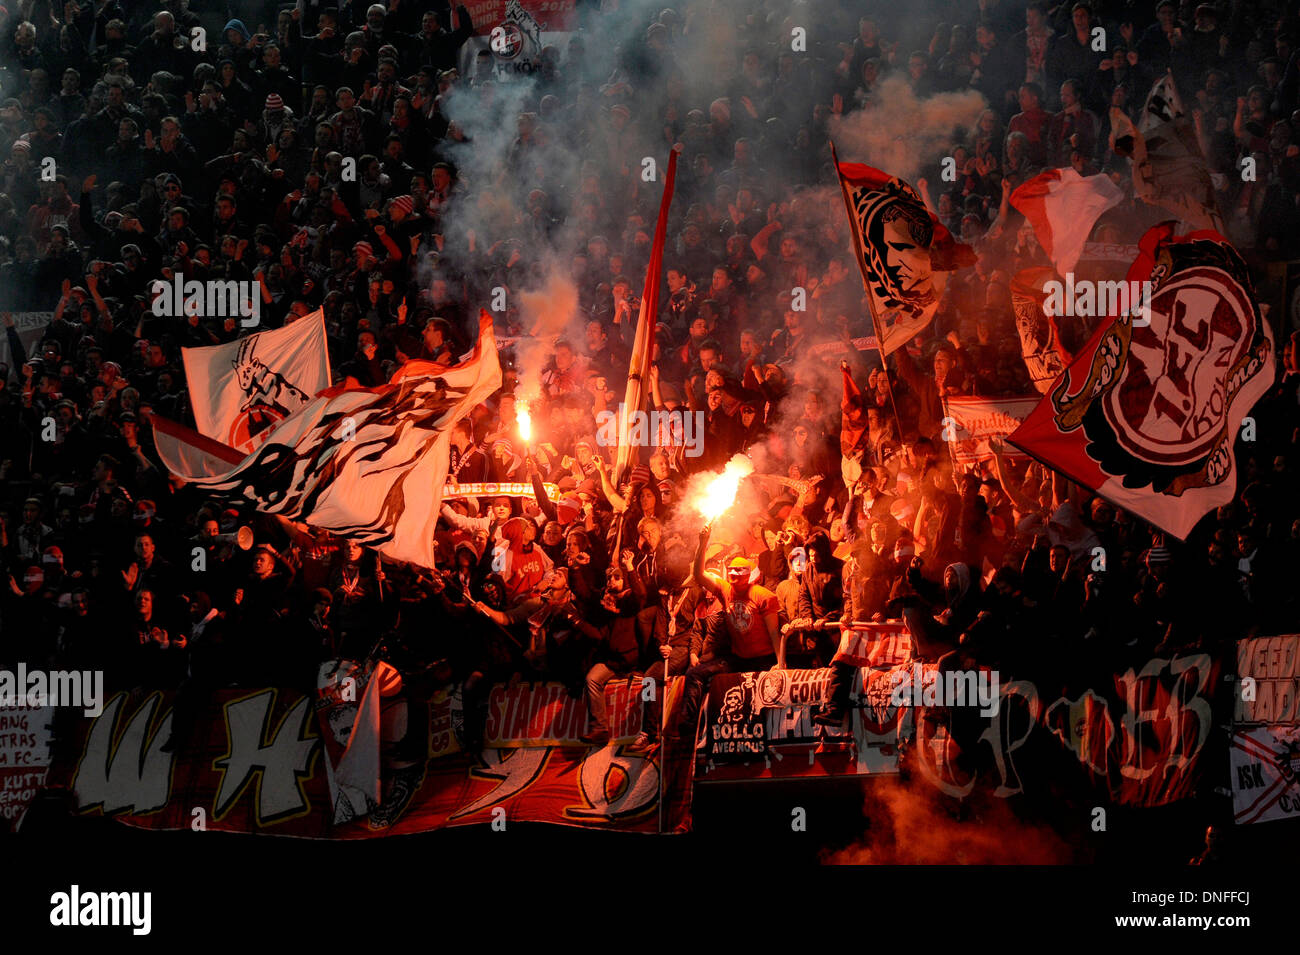 Les partisans du club de Bundesliga allemande de football FC Köln (Cologne) célébrer leurs torches brûlant de l'équipe Banque D'Images